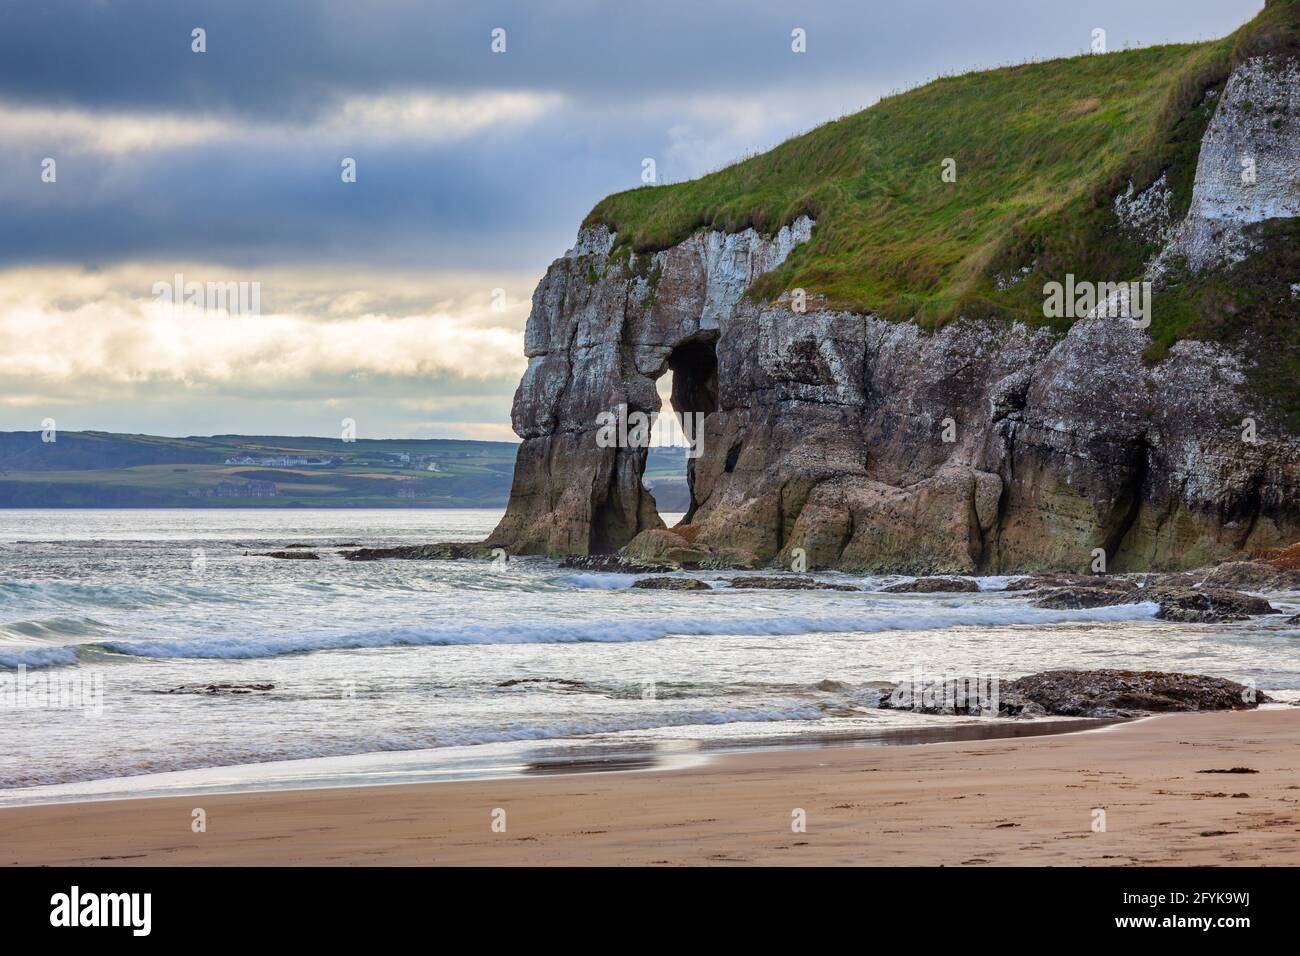 Rock Arch, conocido como Elephant Rock en Whiterocks Beach, situado justo al lado de la ruta costera Causeway en la costa norte de Irlanda del Norte. Foto de stock